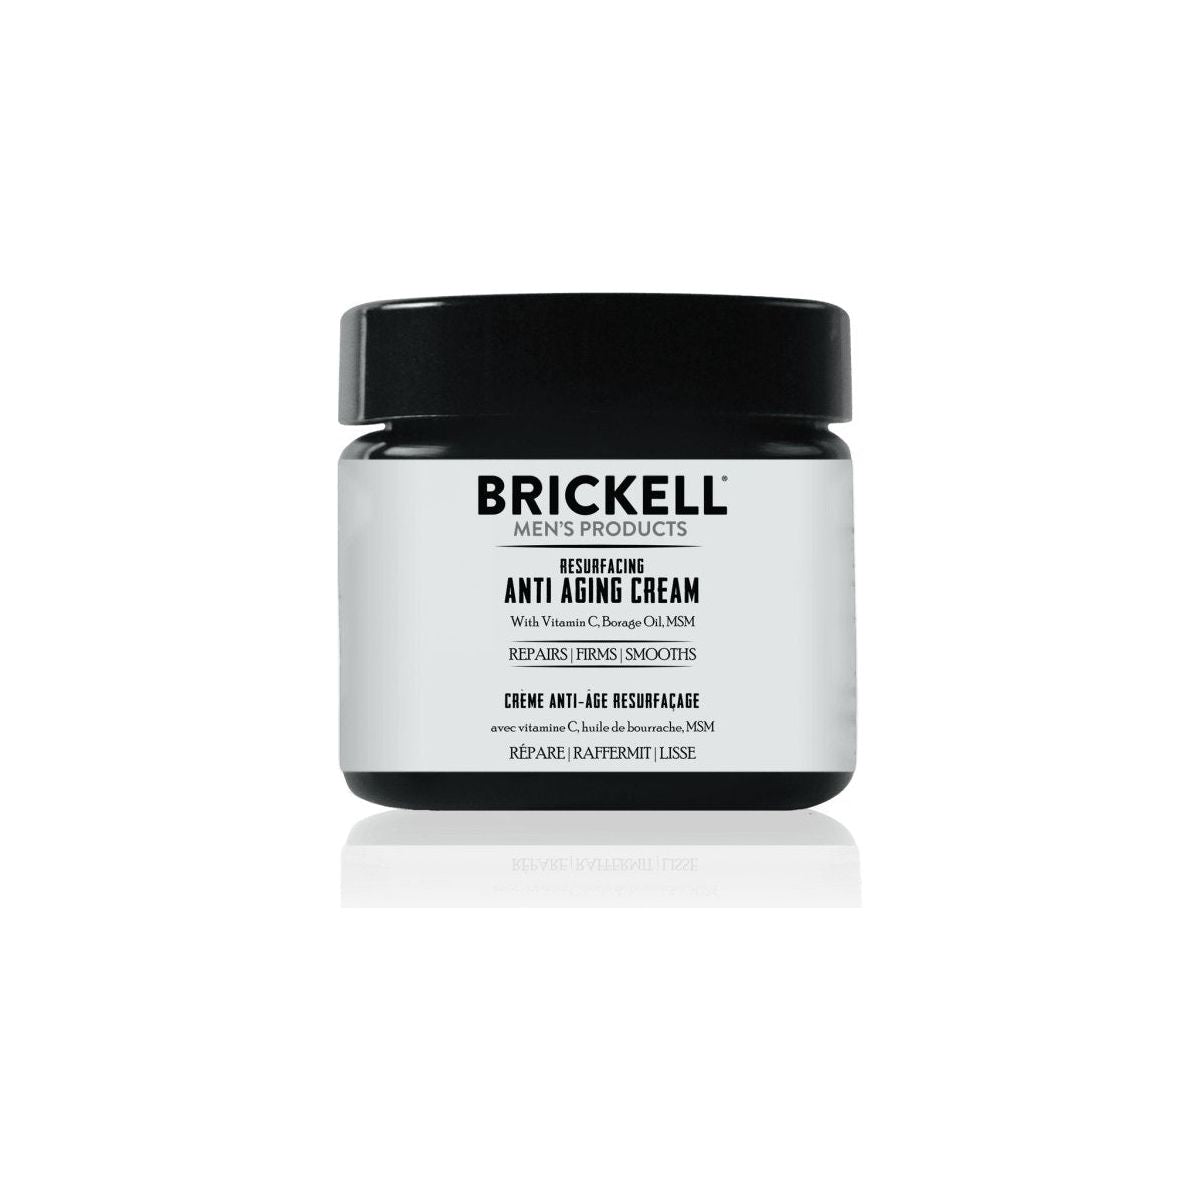 Brickell Resurfacing Anti Aging Cream - 59ml - Glam Global UK